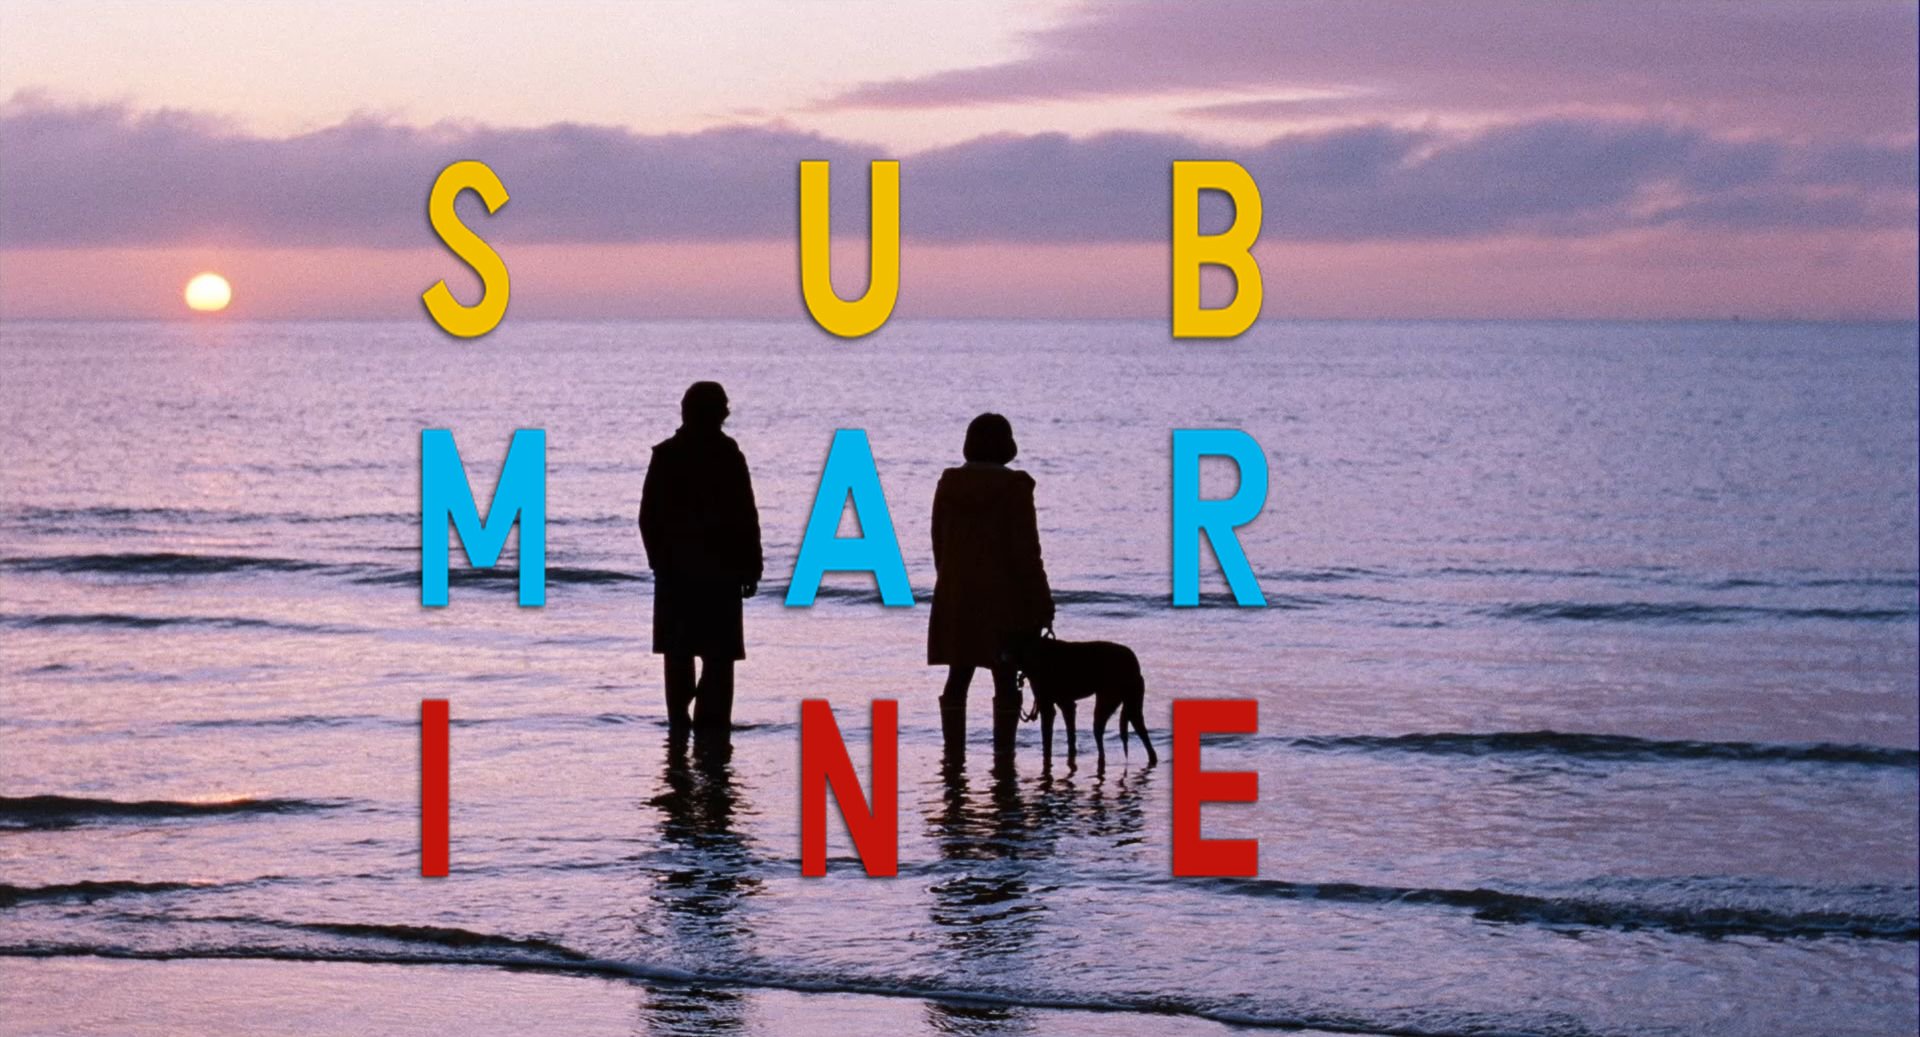 Submarine (Movie) movie Image